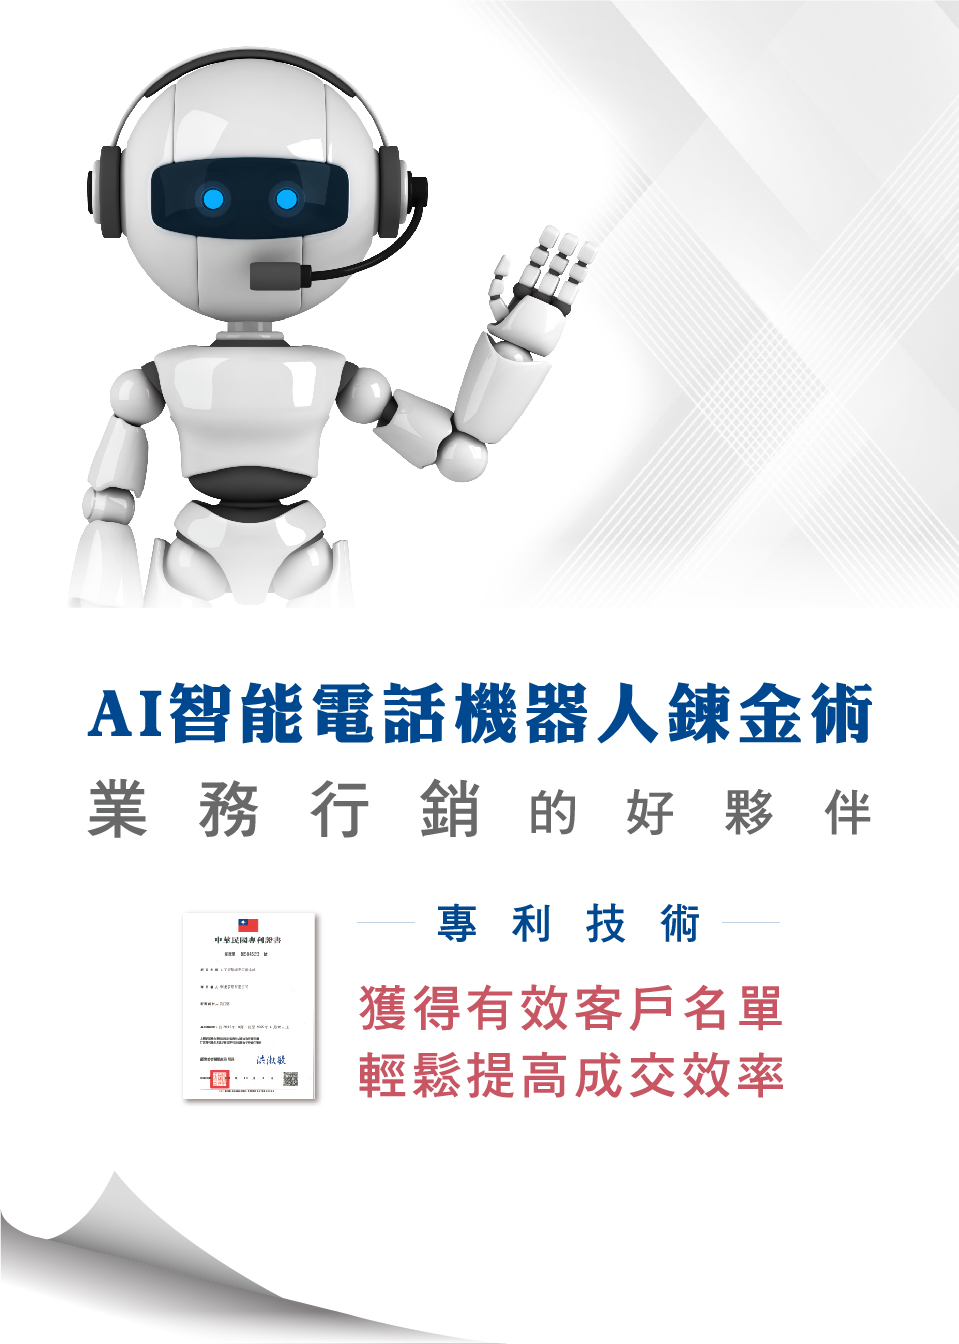 搜客AI智慧語音電話行銷機器人